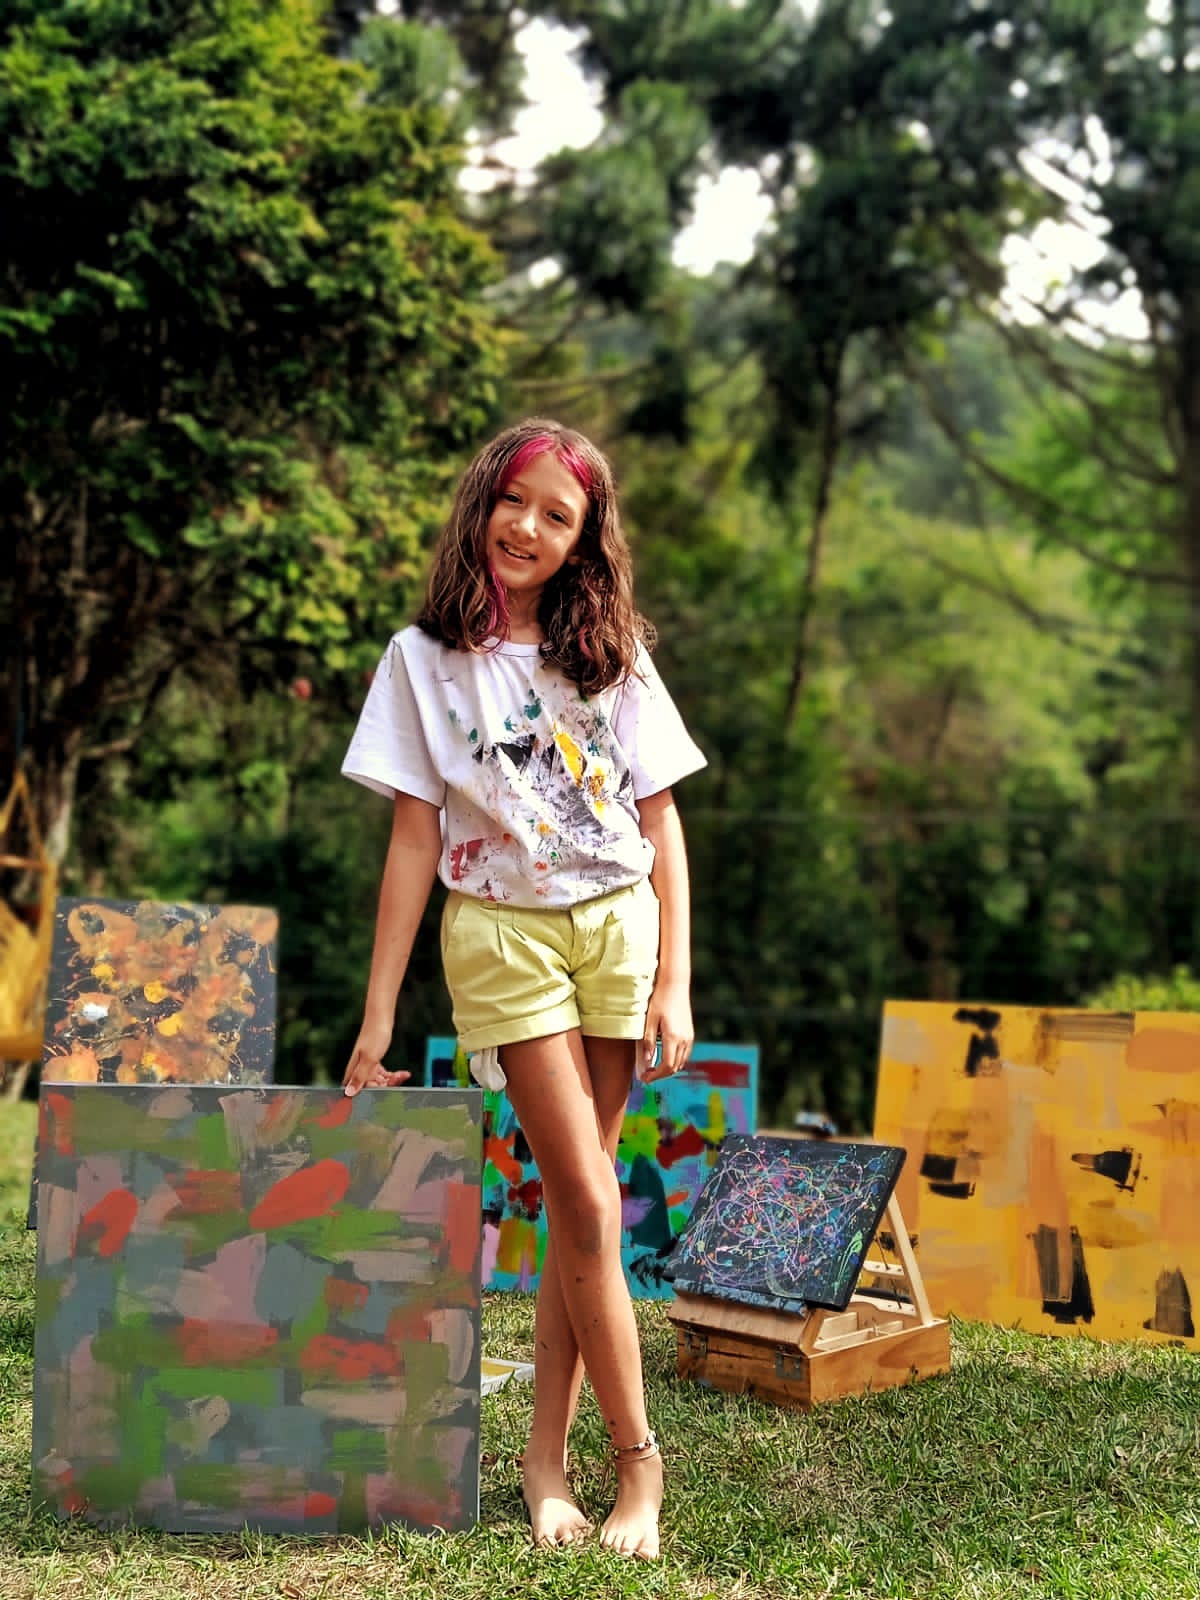 Aos 9 anos, menina de Friburgo vira a sensação no mundo das artes